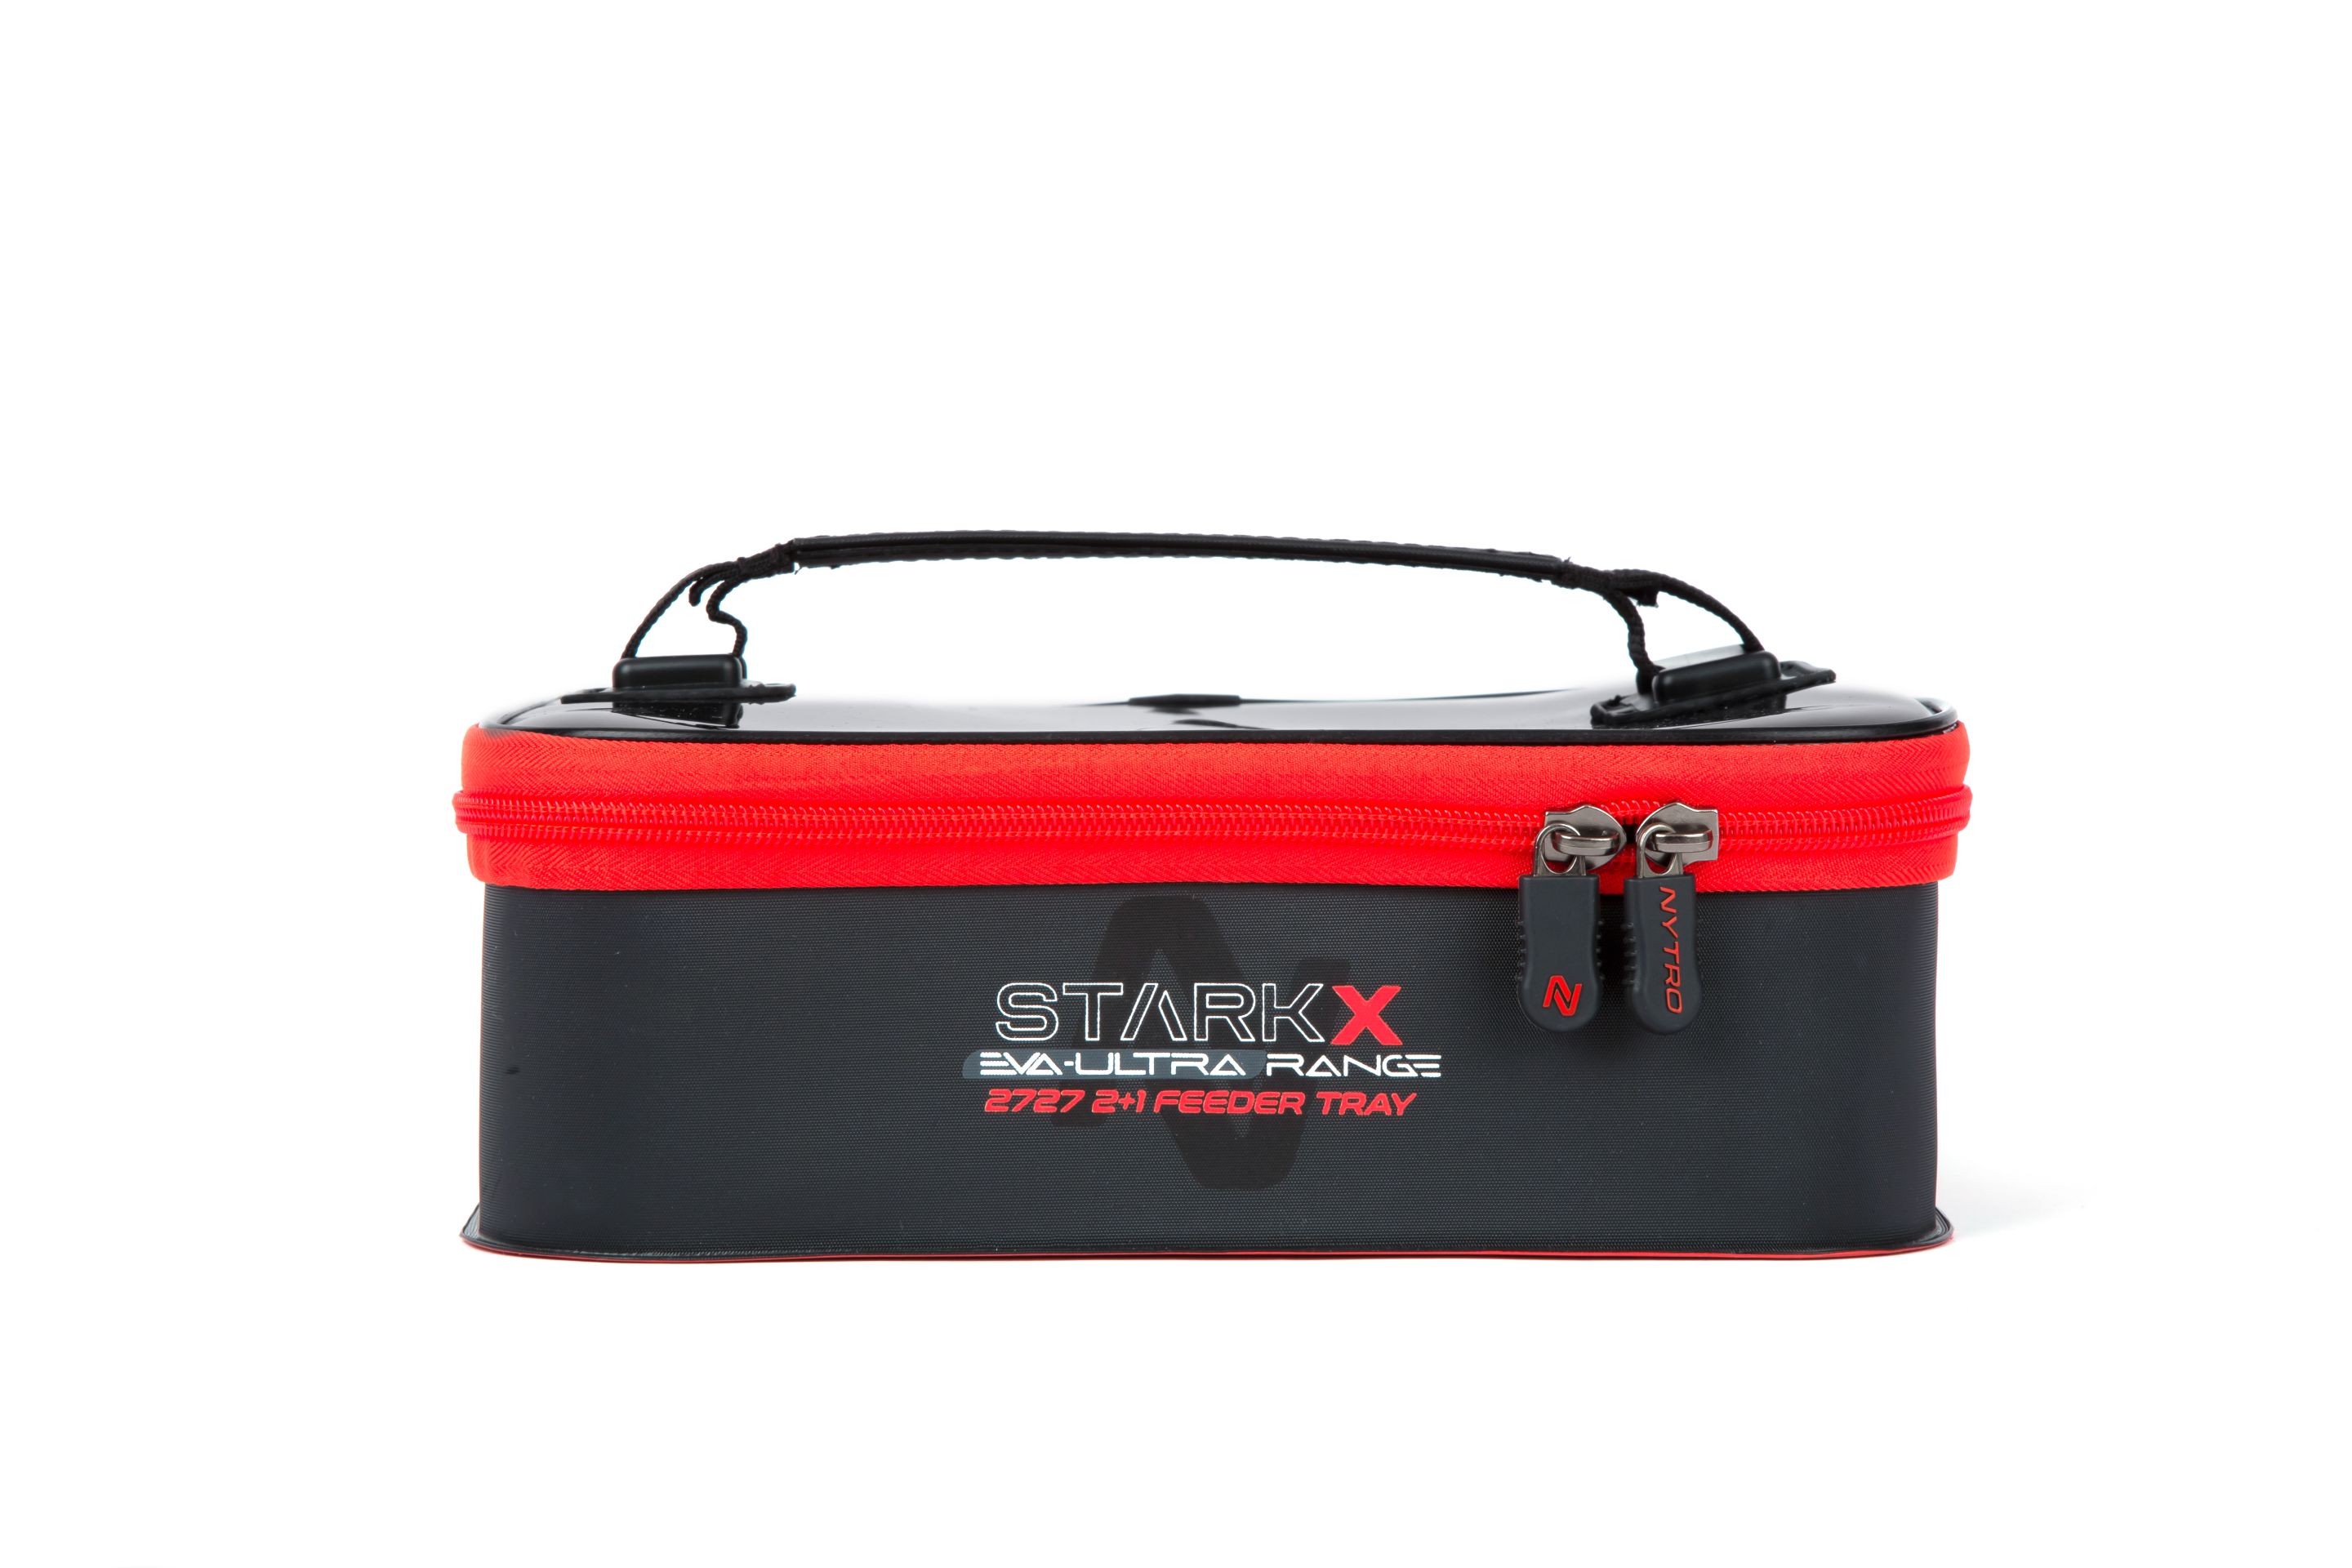 Nytro StarkX 2+1 Feeder Tray System